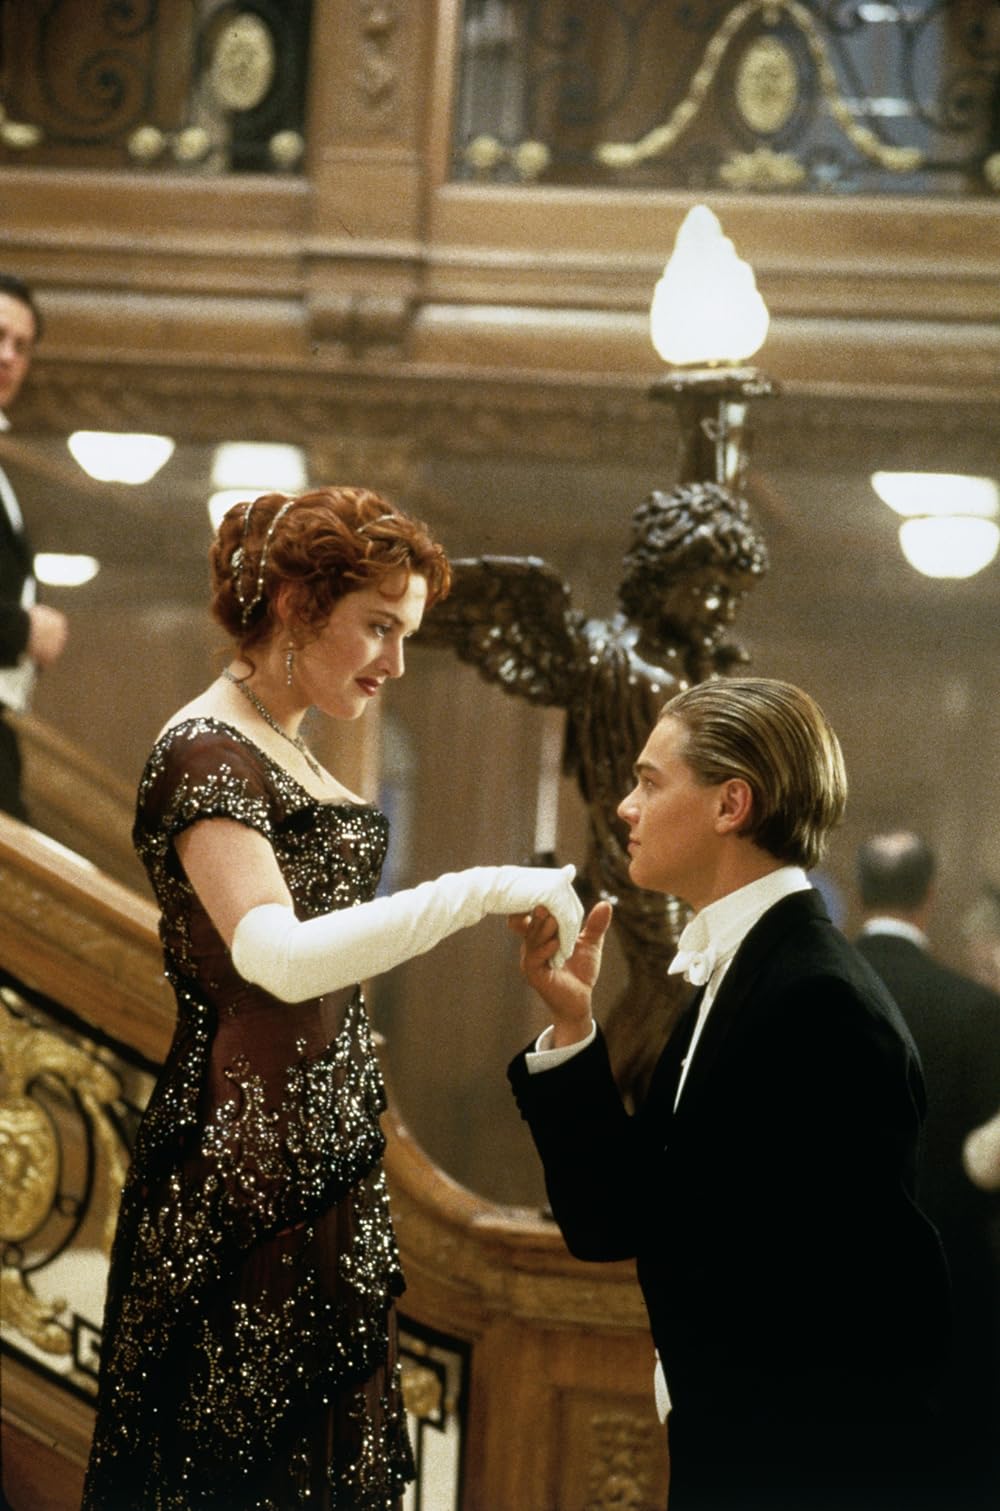 دانلود فیلم Titanic 1997